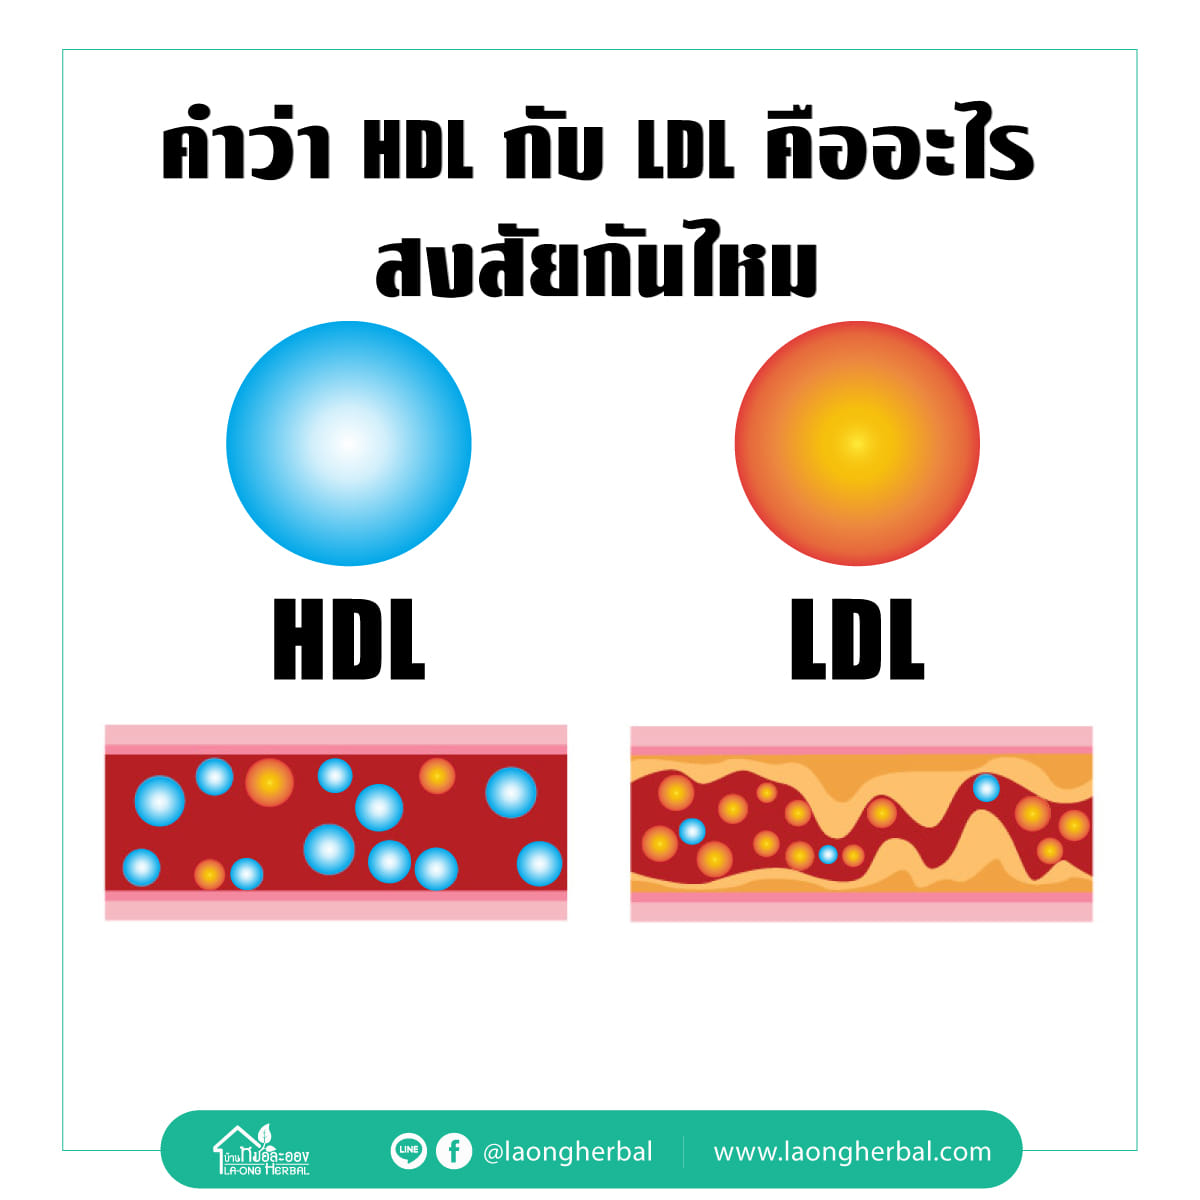 ค่า HDL คือ